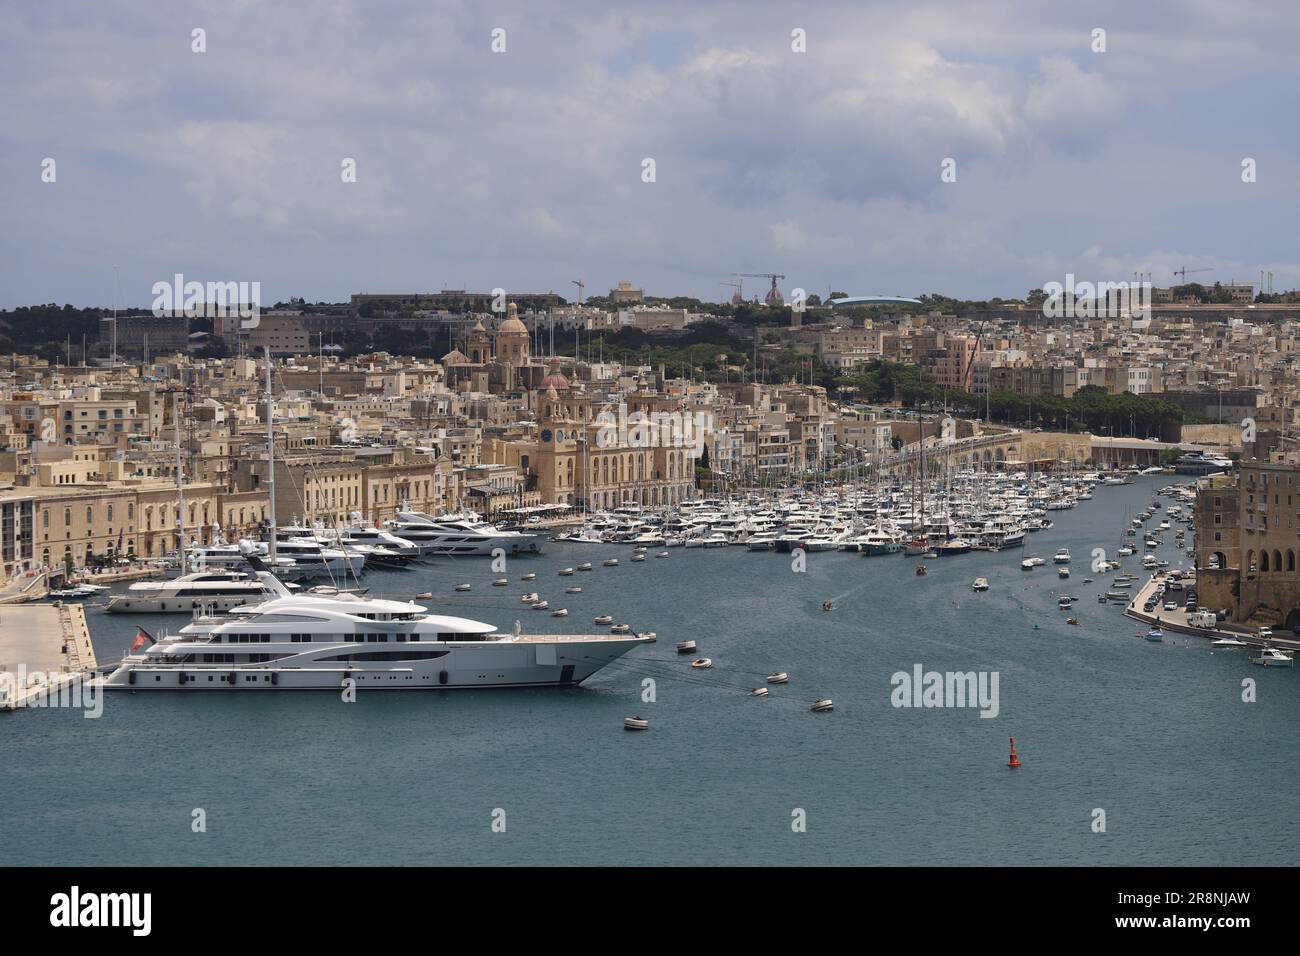 Malta island - many places Stock Photo